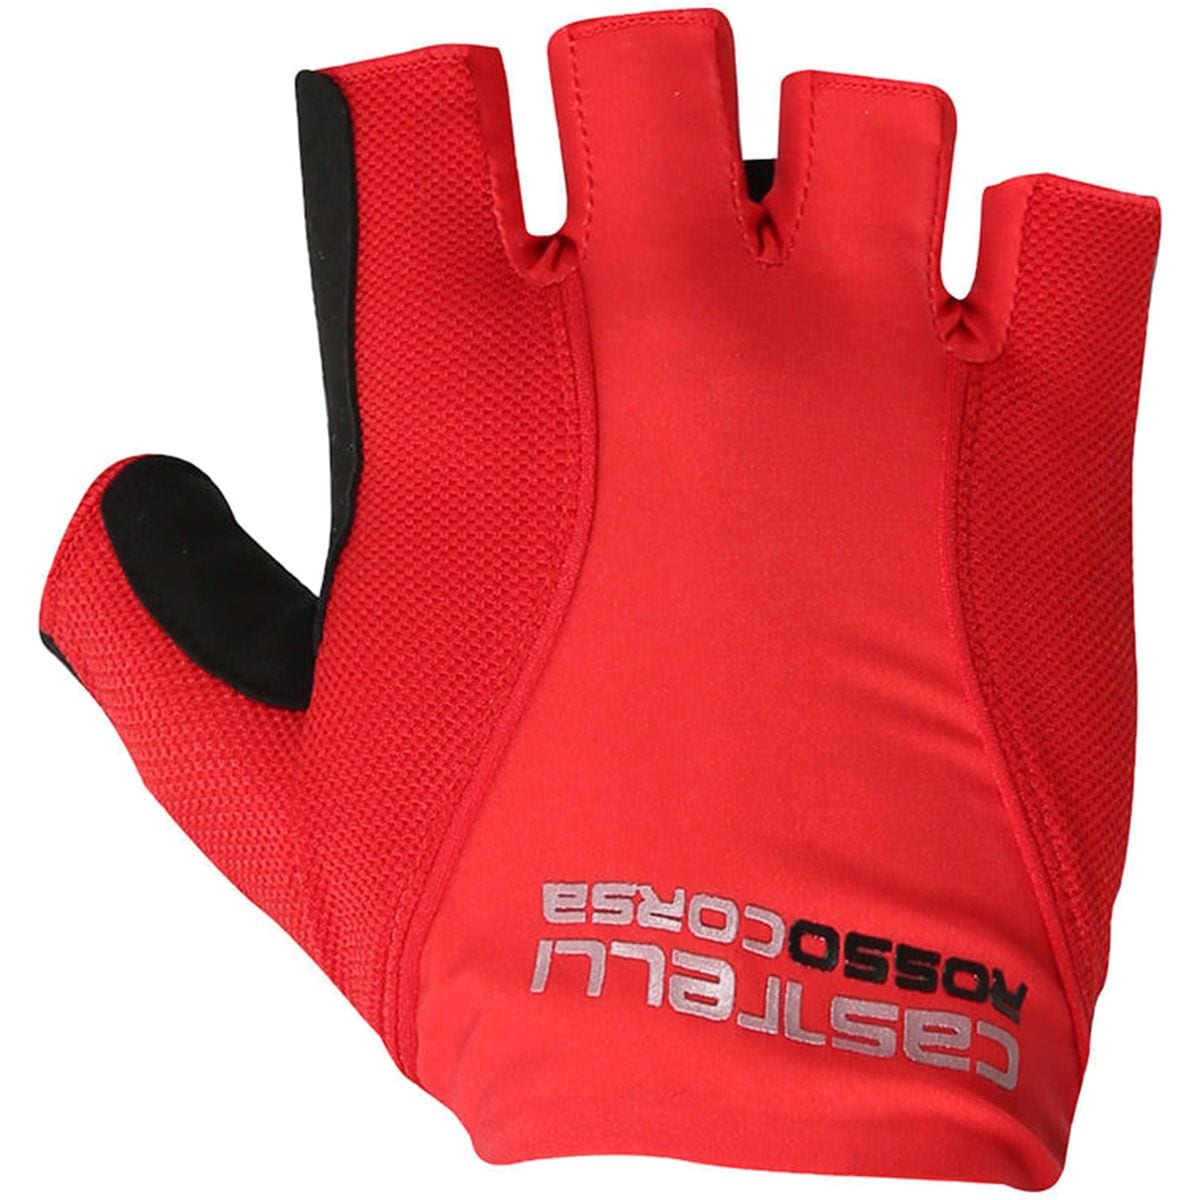 Castelli Rosso Corsa Pave Glove Mens